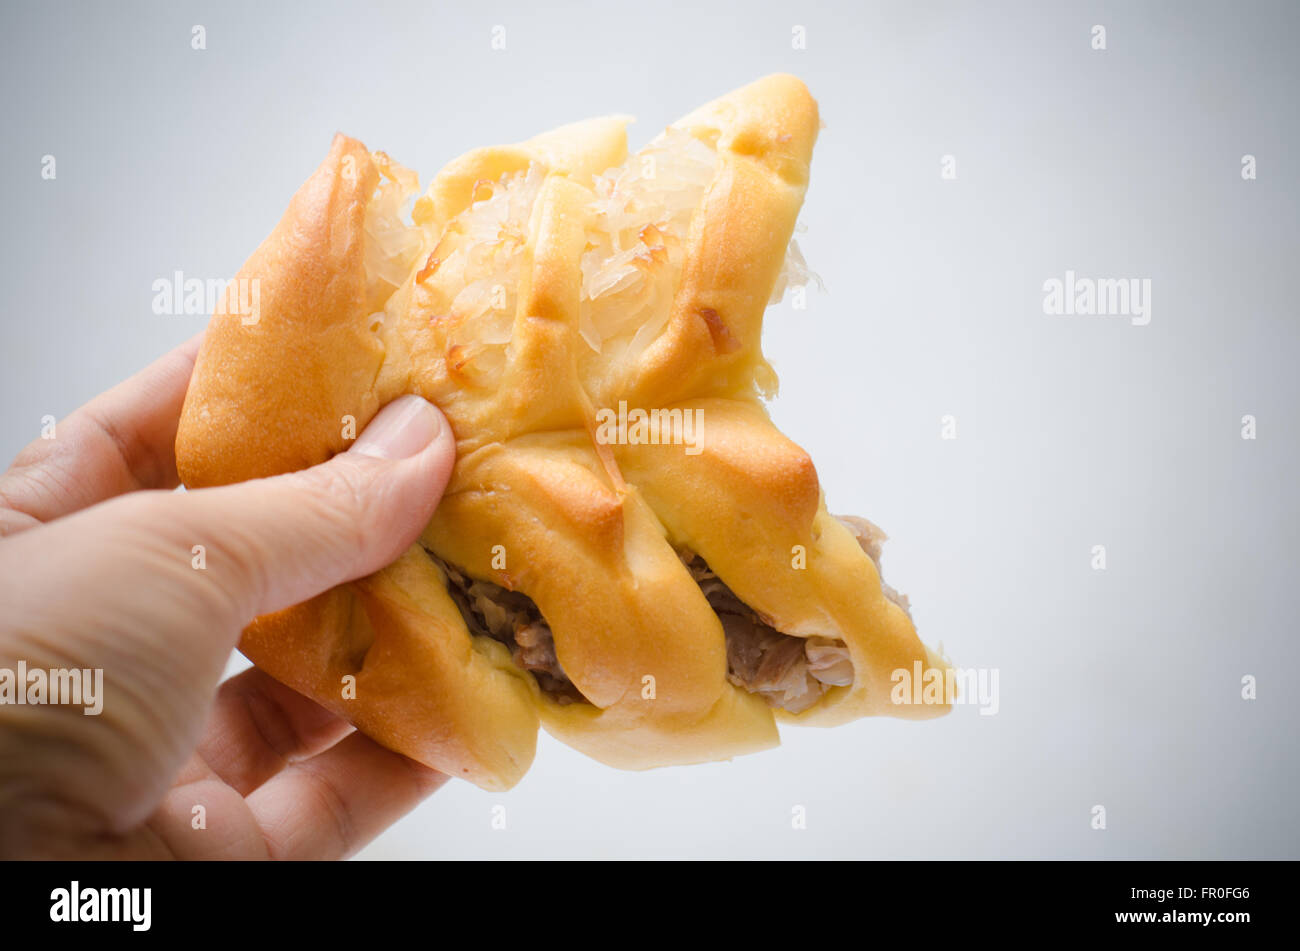 Brot ist in zwei Hälften in männlicher Hand auf dem weißen Hintergrund hin und her gerissen Stockfoto